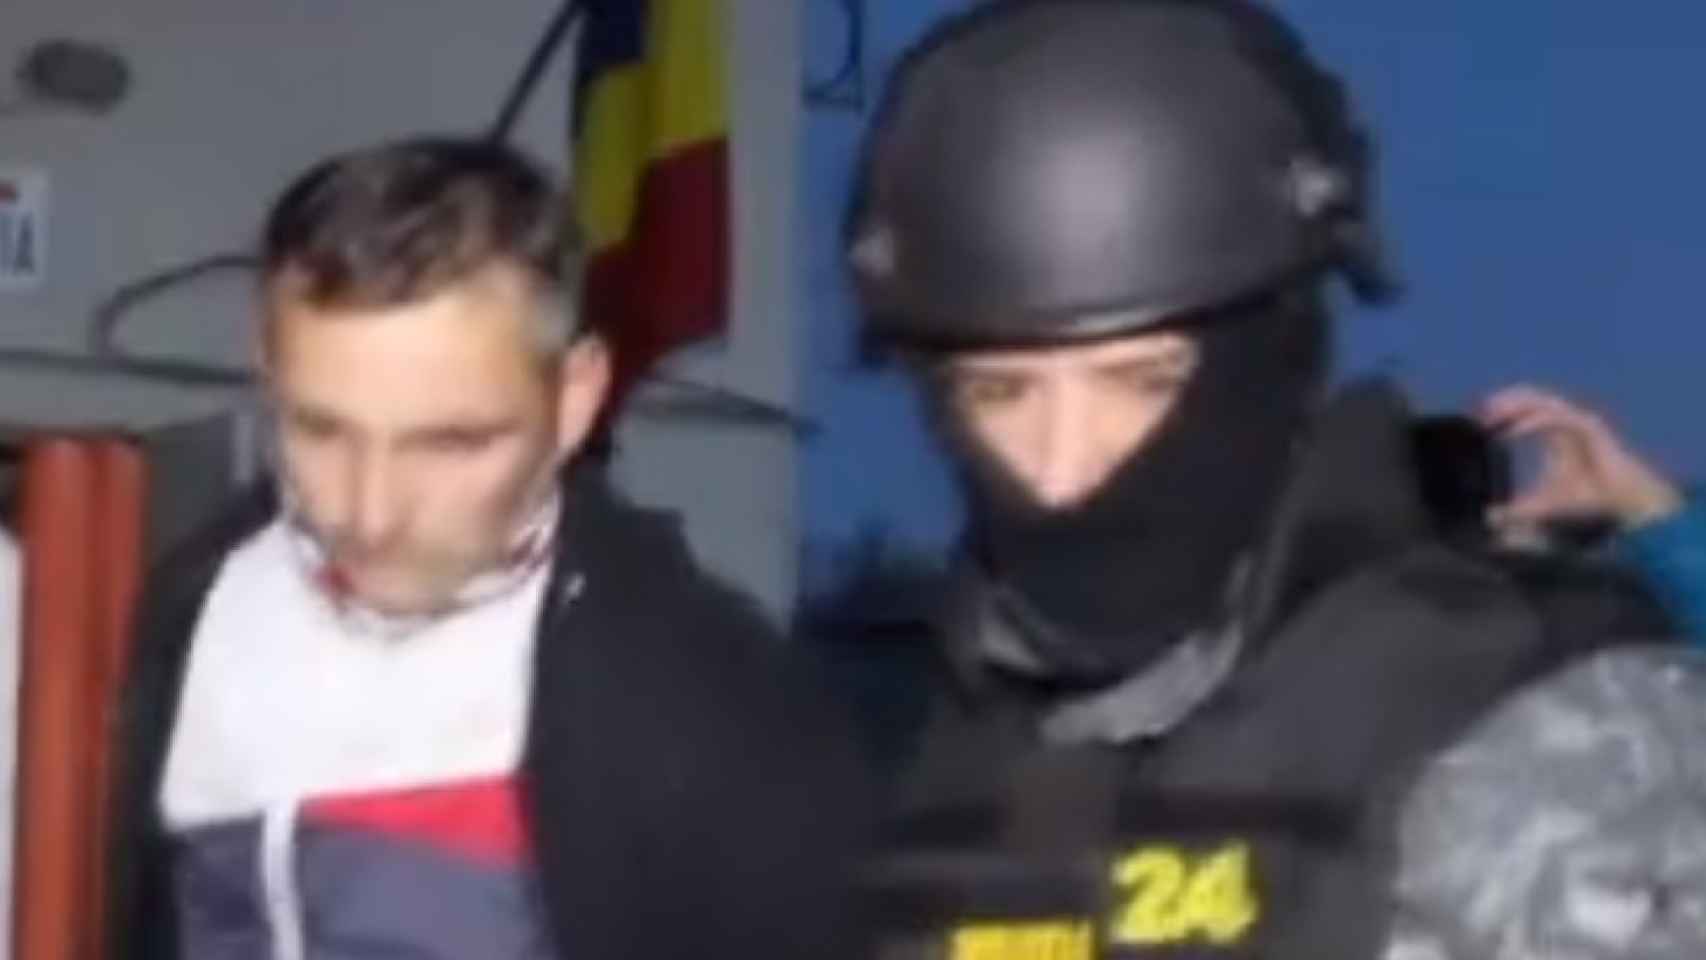 Momento de la detención del padre por la policía de Rumanía.